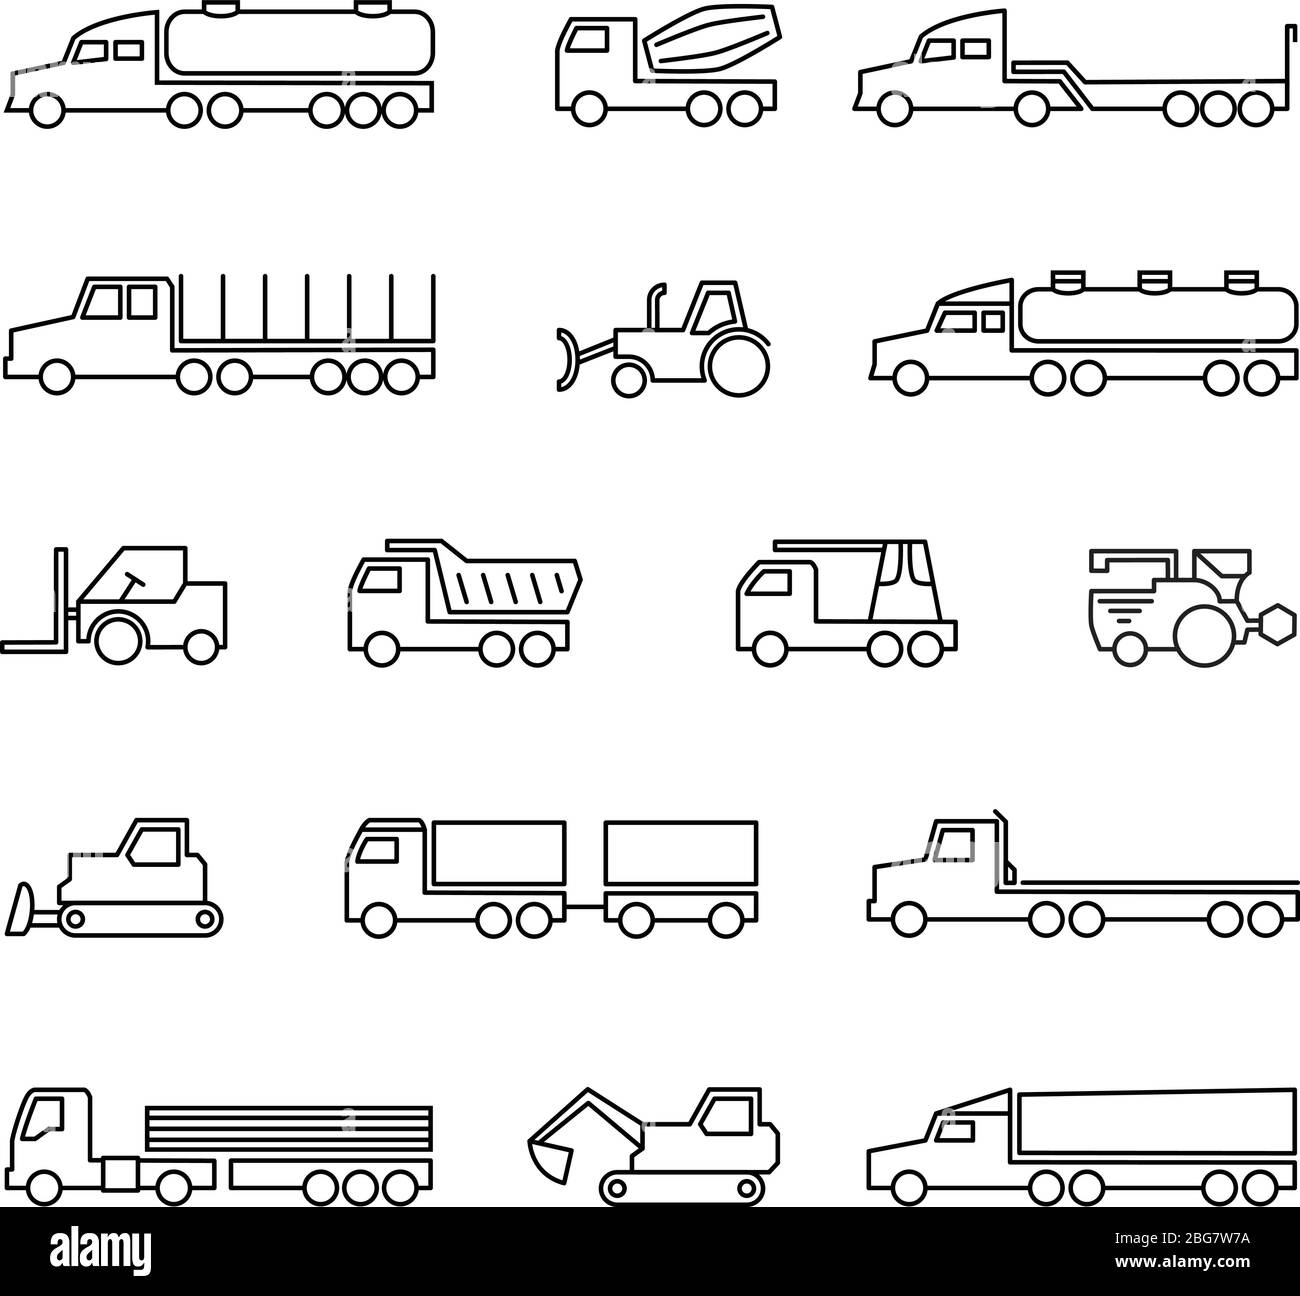 Macchine per l'edilizia. Icone delle linee di veicoli, trattori e attrezzature pesanti. Trattore per trasporto vettoriale, bulldozer e caricatore illustrato Illustrazione Vettoriale